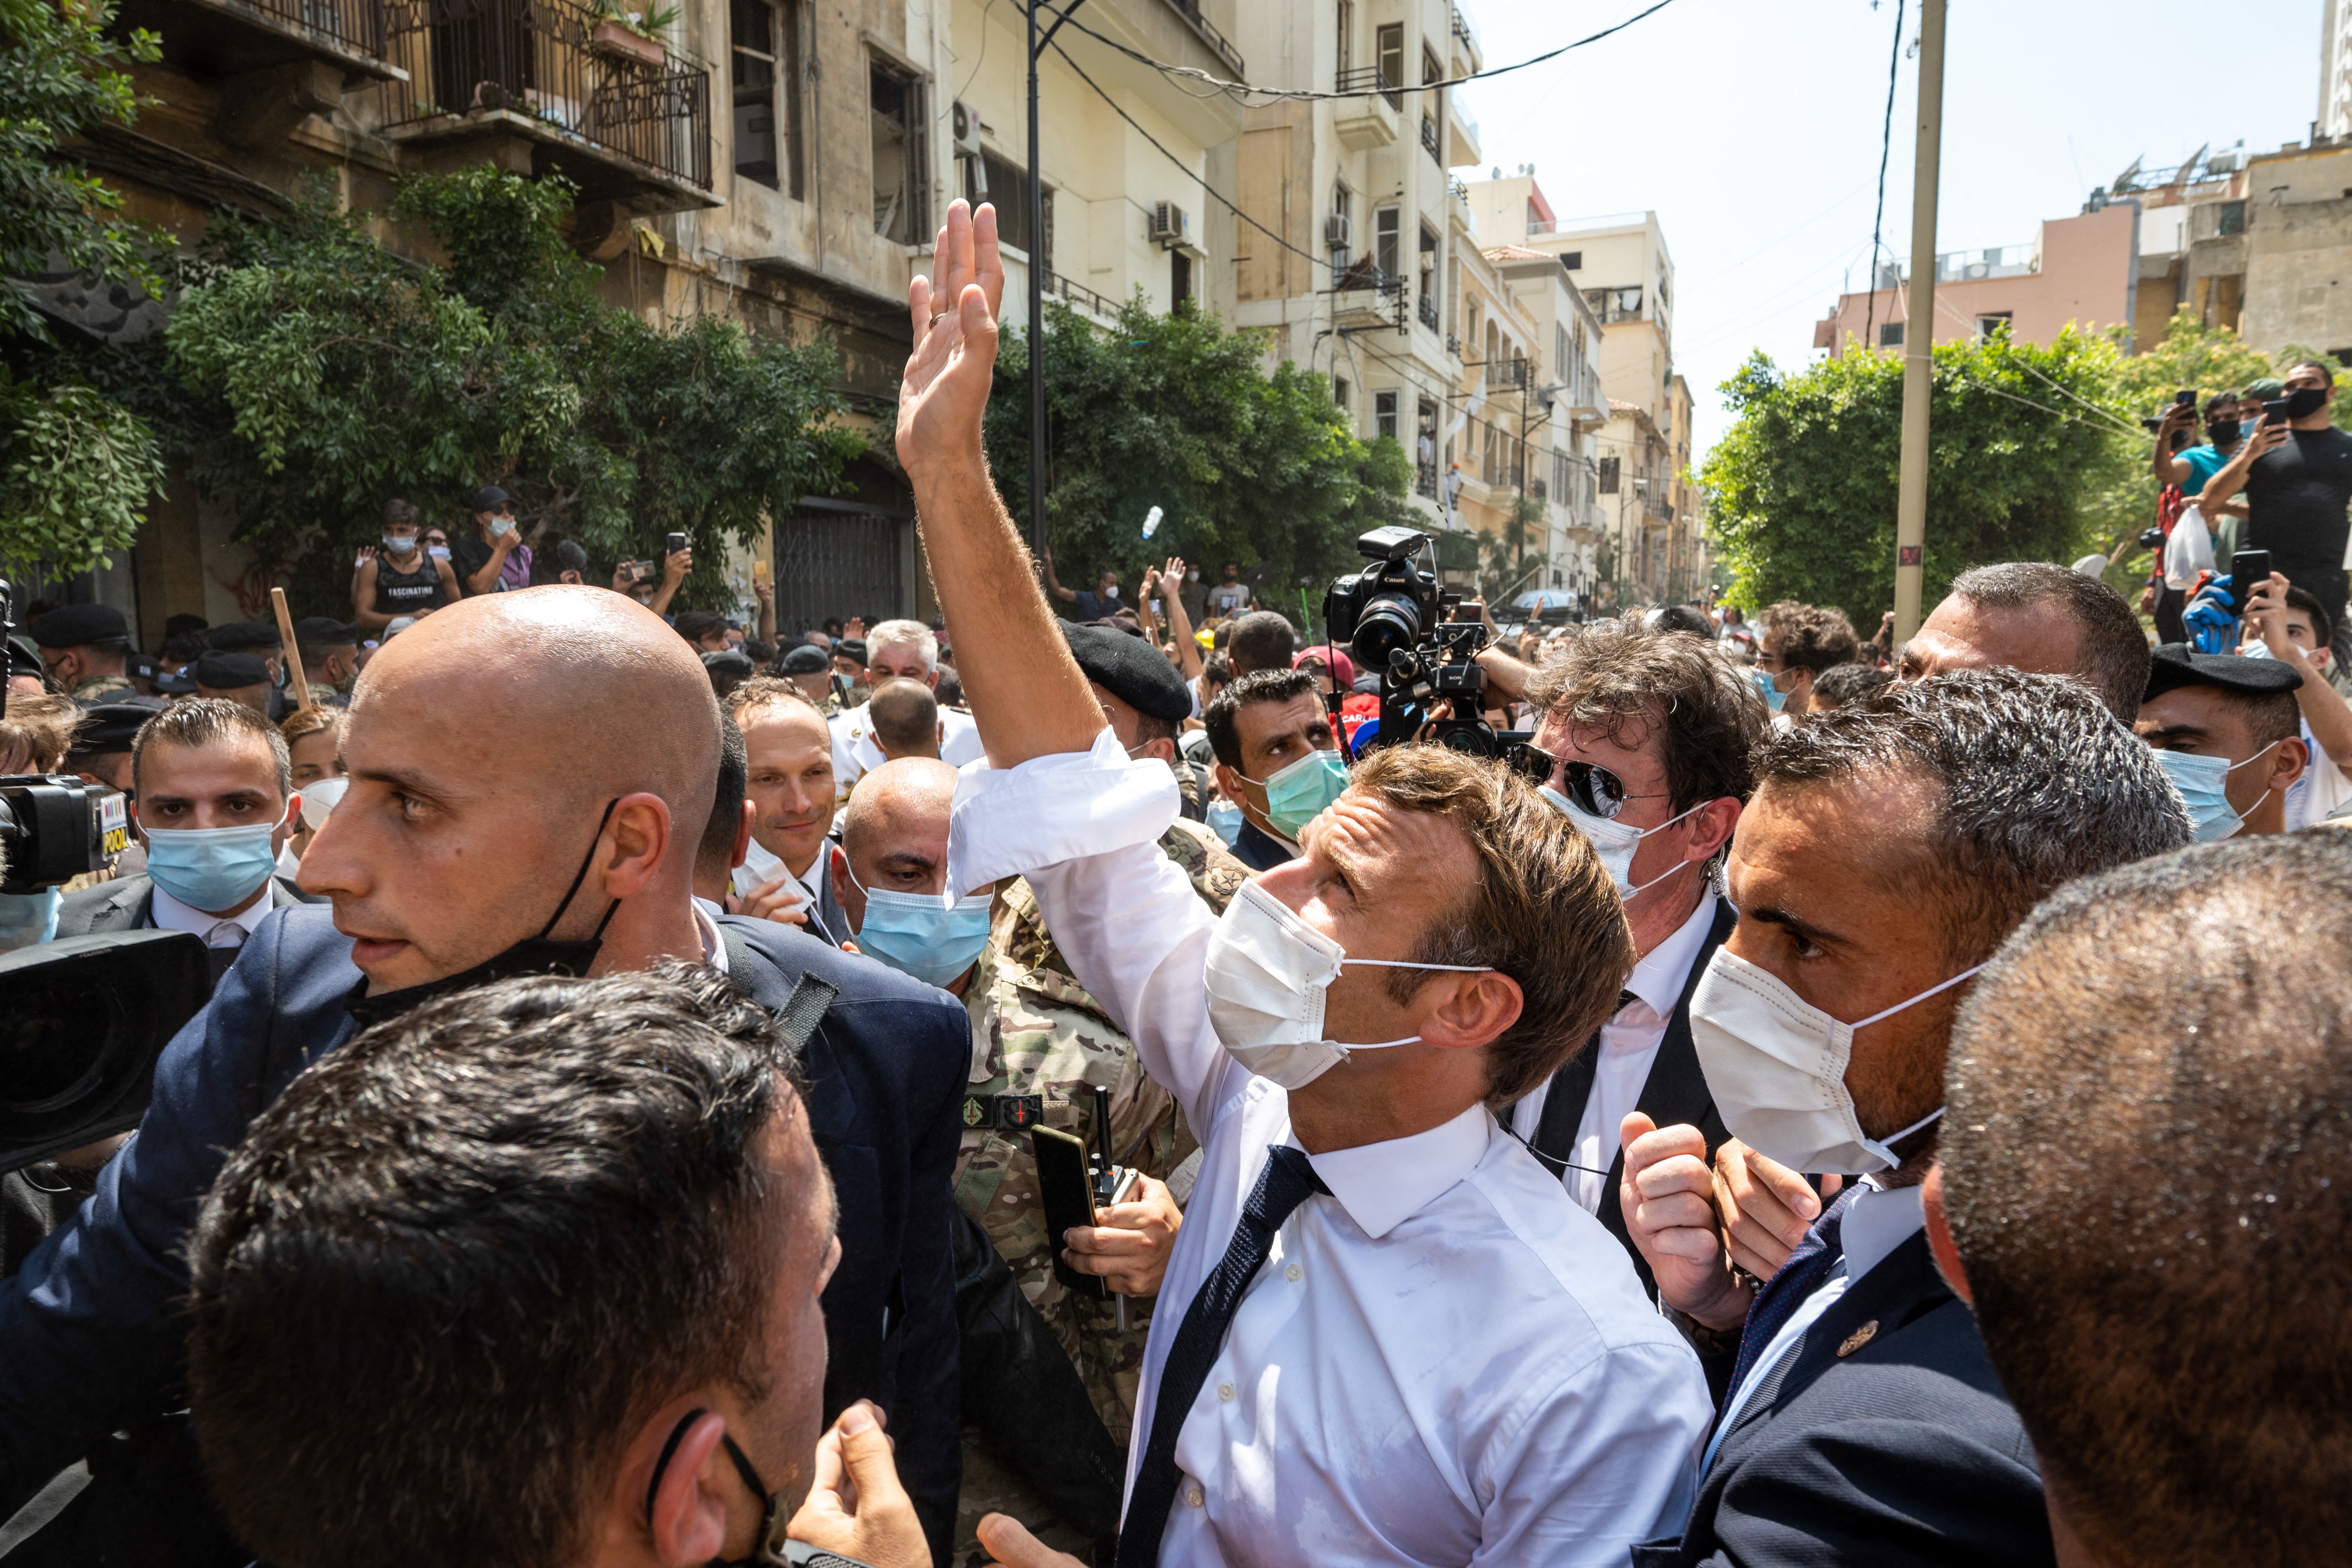 الرئيس الفرنسي إيمانويل ماكرون يلتقي اللبنانيين في منطقة الجميزة ، بعد يومين من انفجار ضخم مجهول في ميناء بيروت ، لبنان في 6 آب / أغسطس 2020. تصوير عمار عبد ربه / ABACAPRESS.COM.